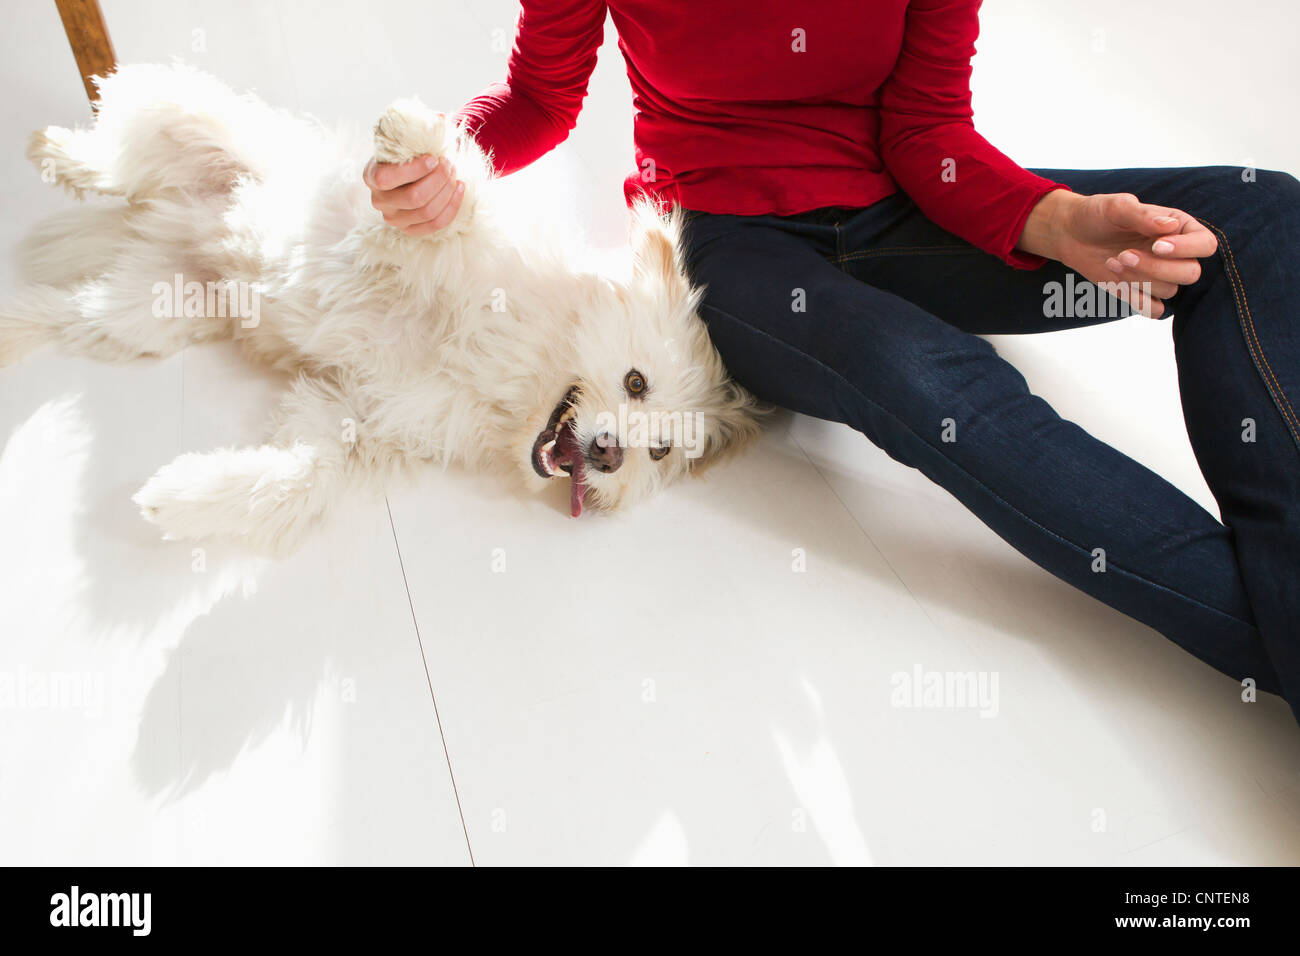 Frau spielt mit Hund am Boden Stockfoto